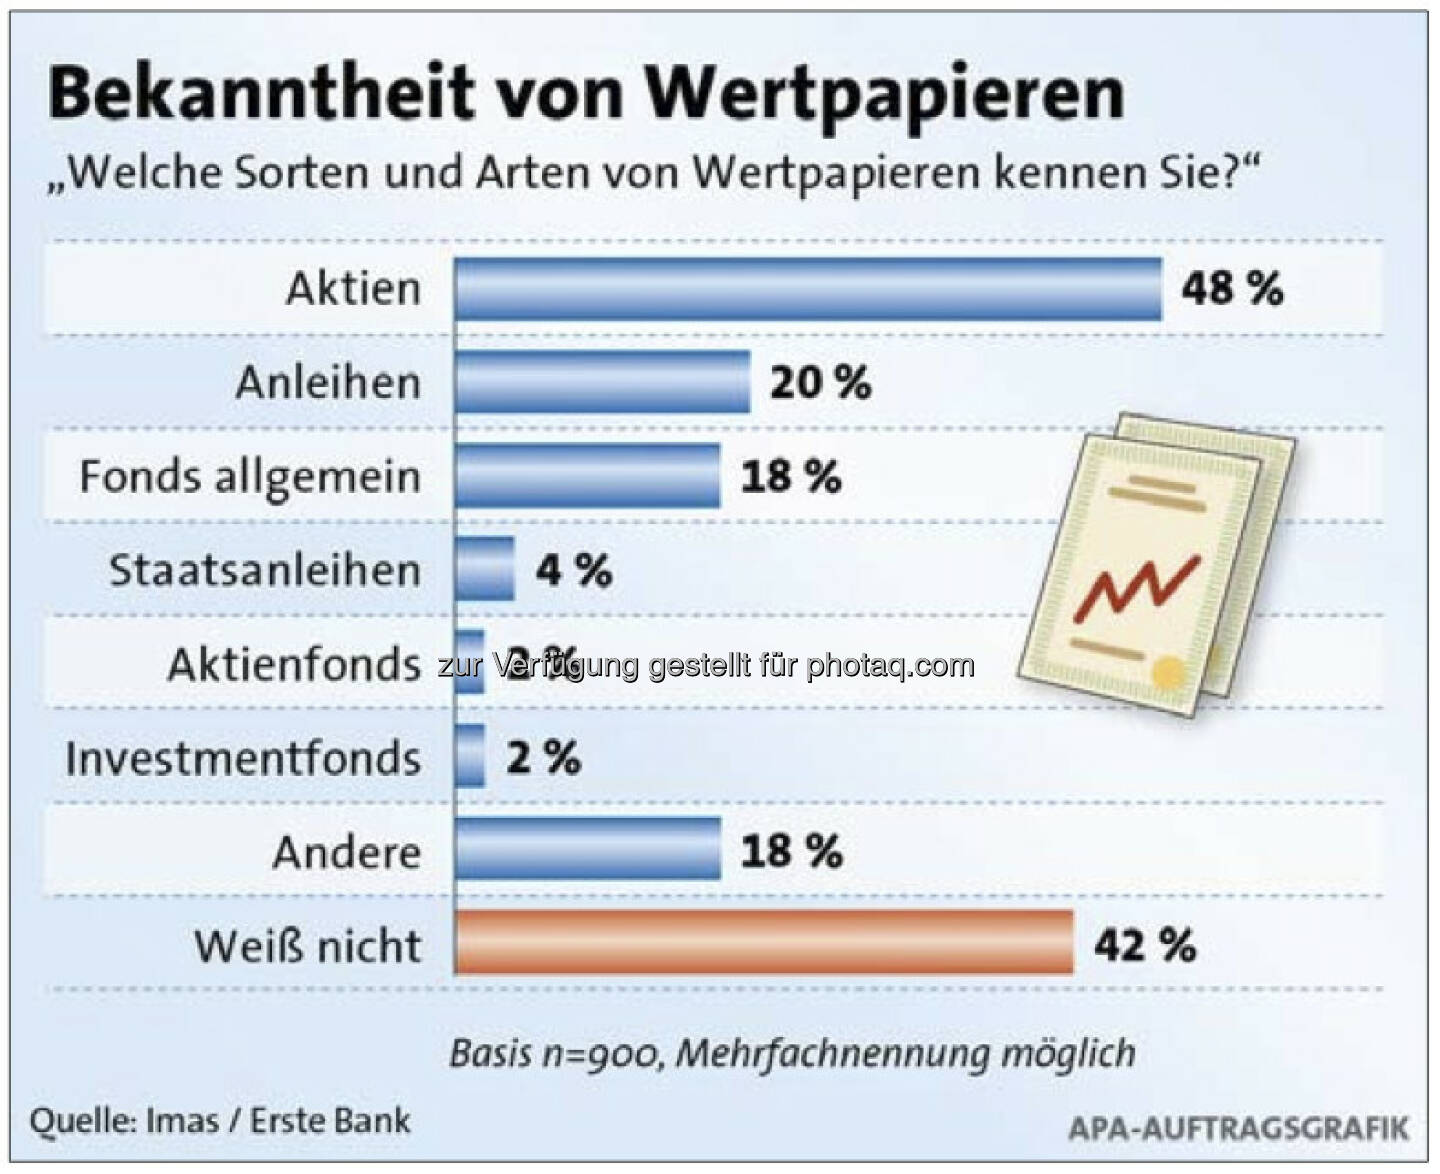 Welche Sorten von Wertpapieren kennen Sie?, siehe http://www.christian-drastil.com/2013/04/16/wertpapierwissen_oesterreicher_geben_sich_schulnote_befriedigend (c) Imas/Erste Bank/APA